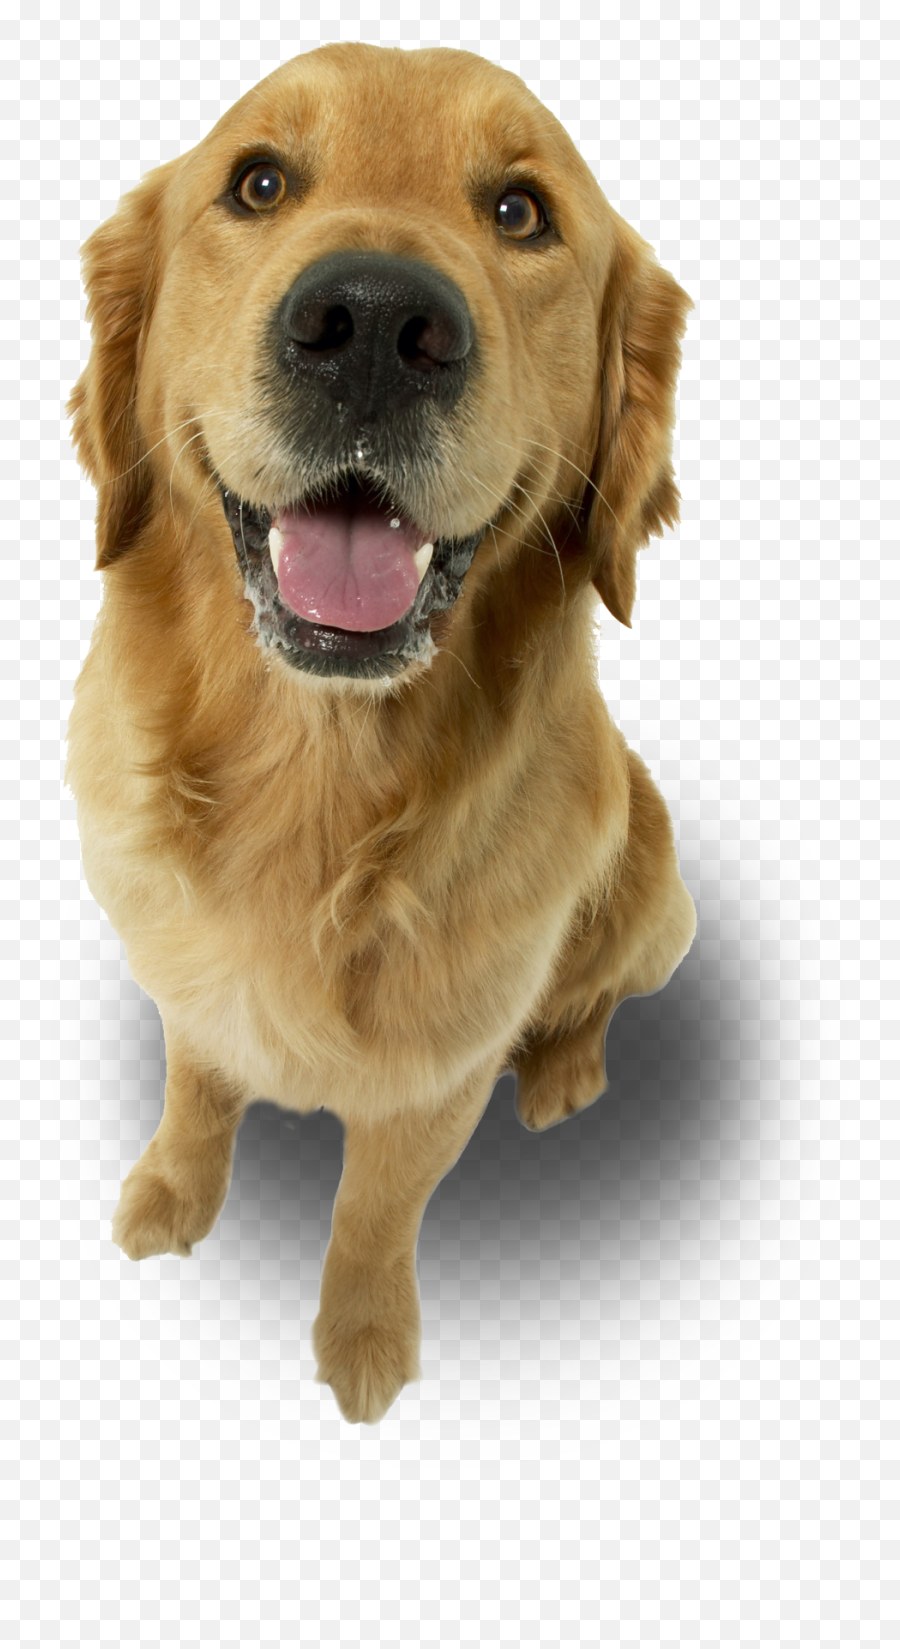 Dog - Love My Golden Retriever Ornament Oval Full Size Imagens De Animais Para Final De Slide Png,Golden Retriever Png